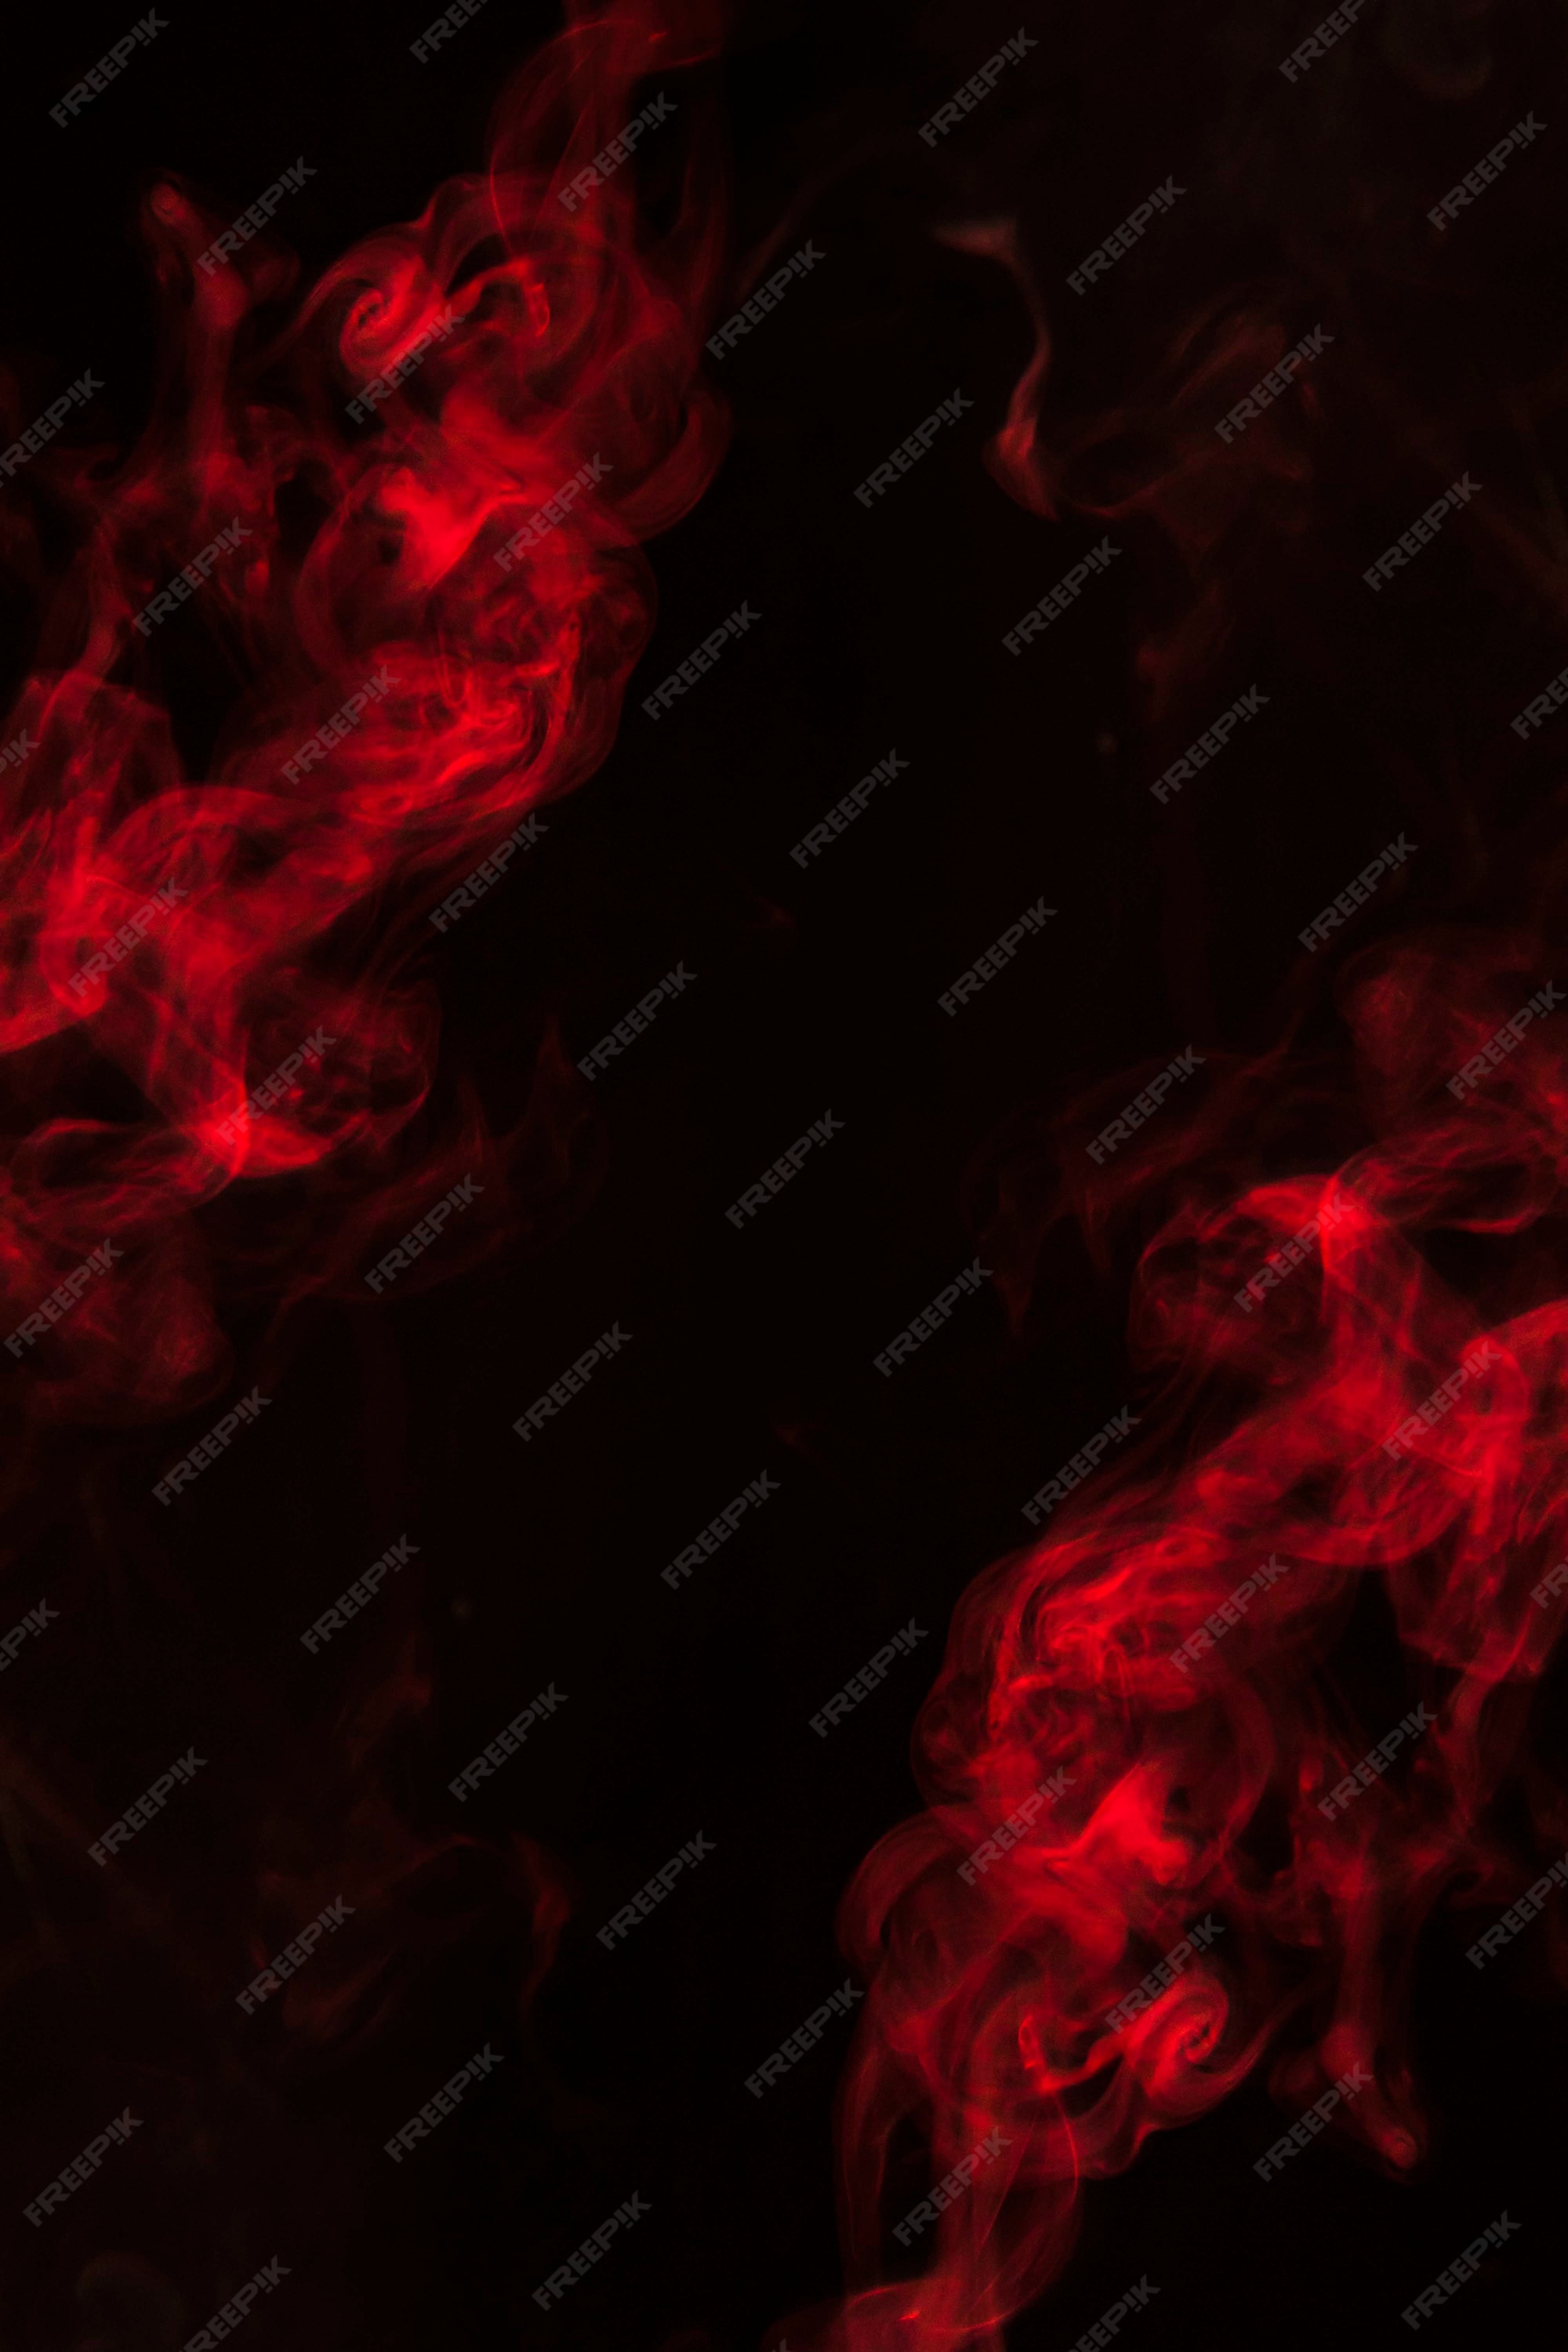 Red Smoke Background Images - Free Download on Freepik